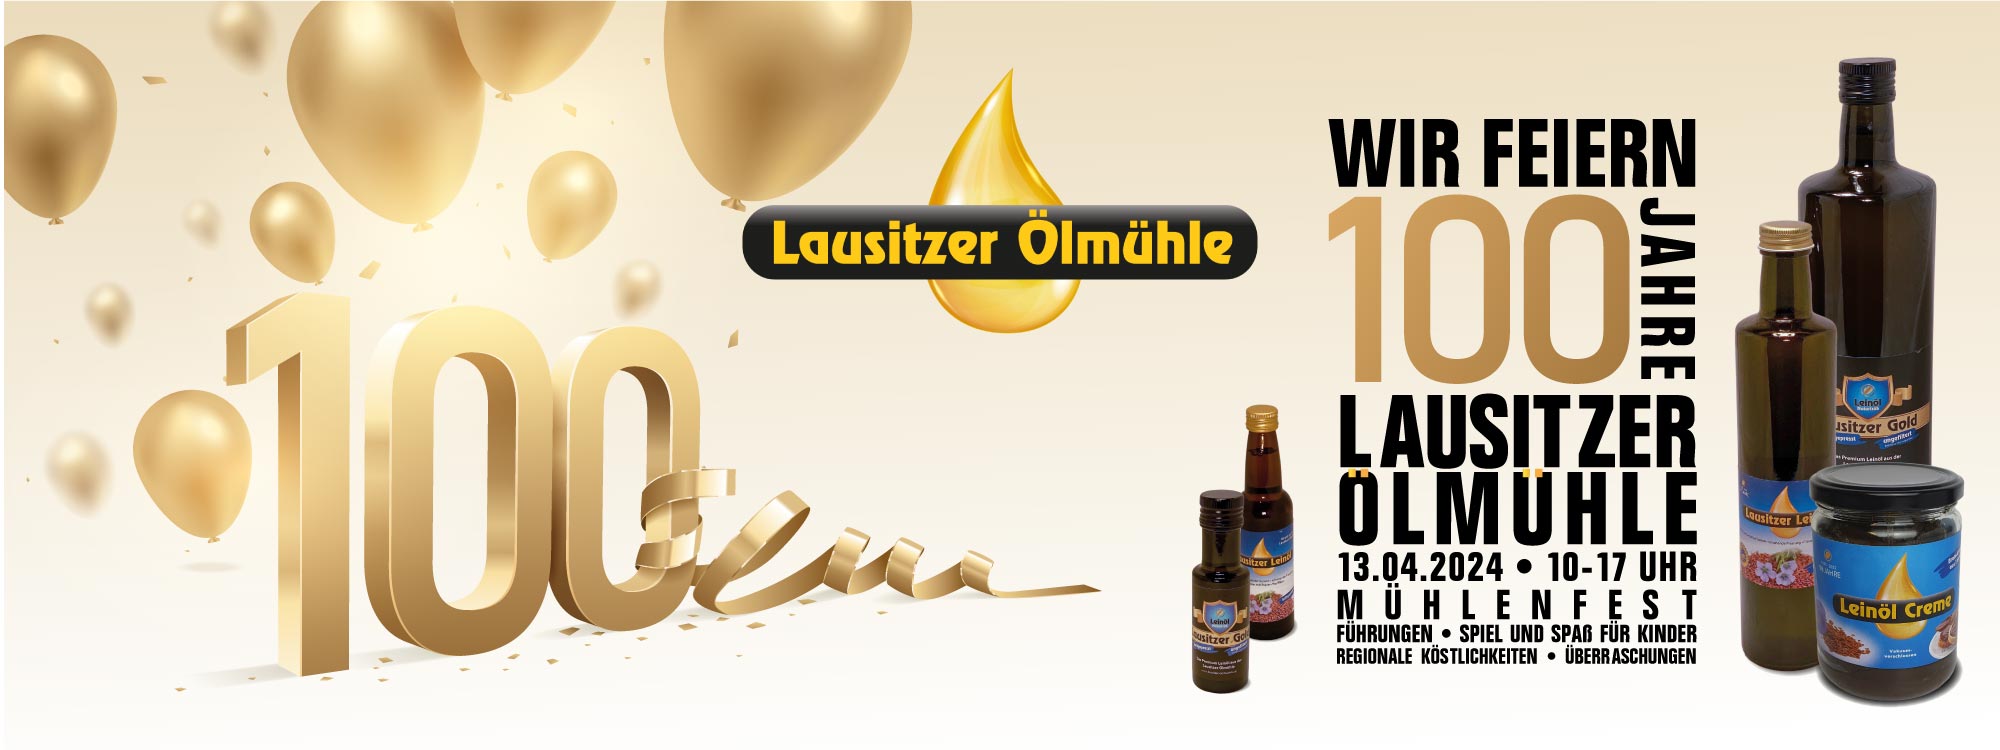 100 Jahre Lausitzer Ölmühle - wir feiern am 13.04.2024